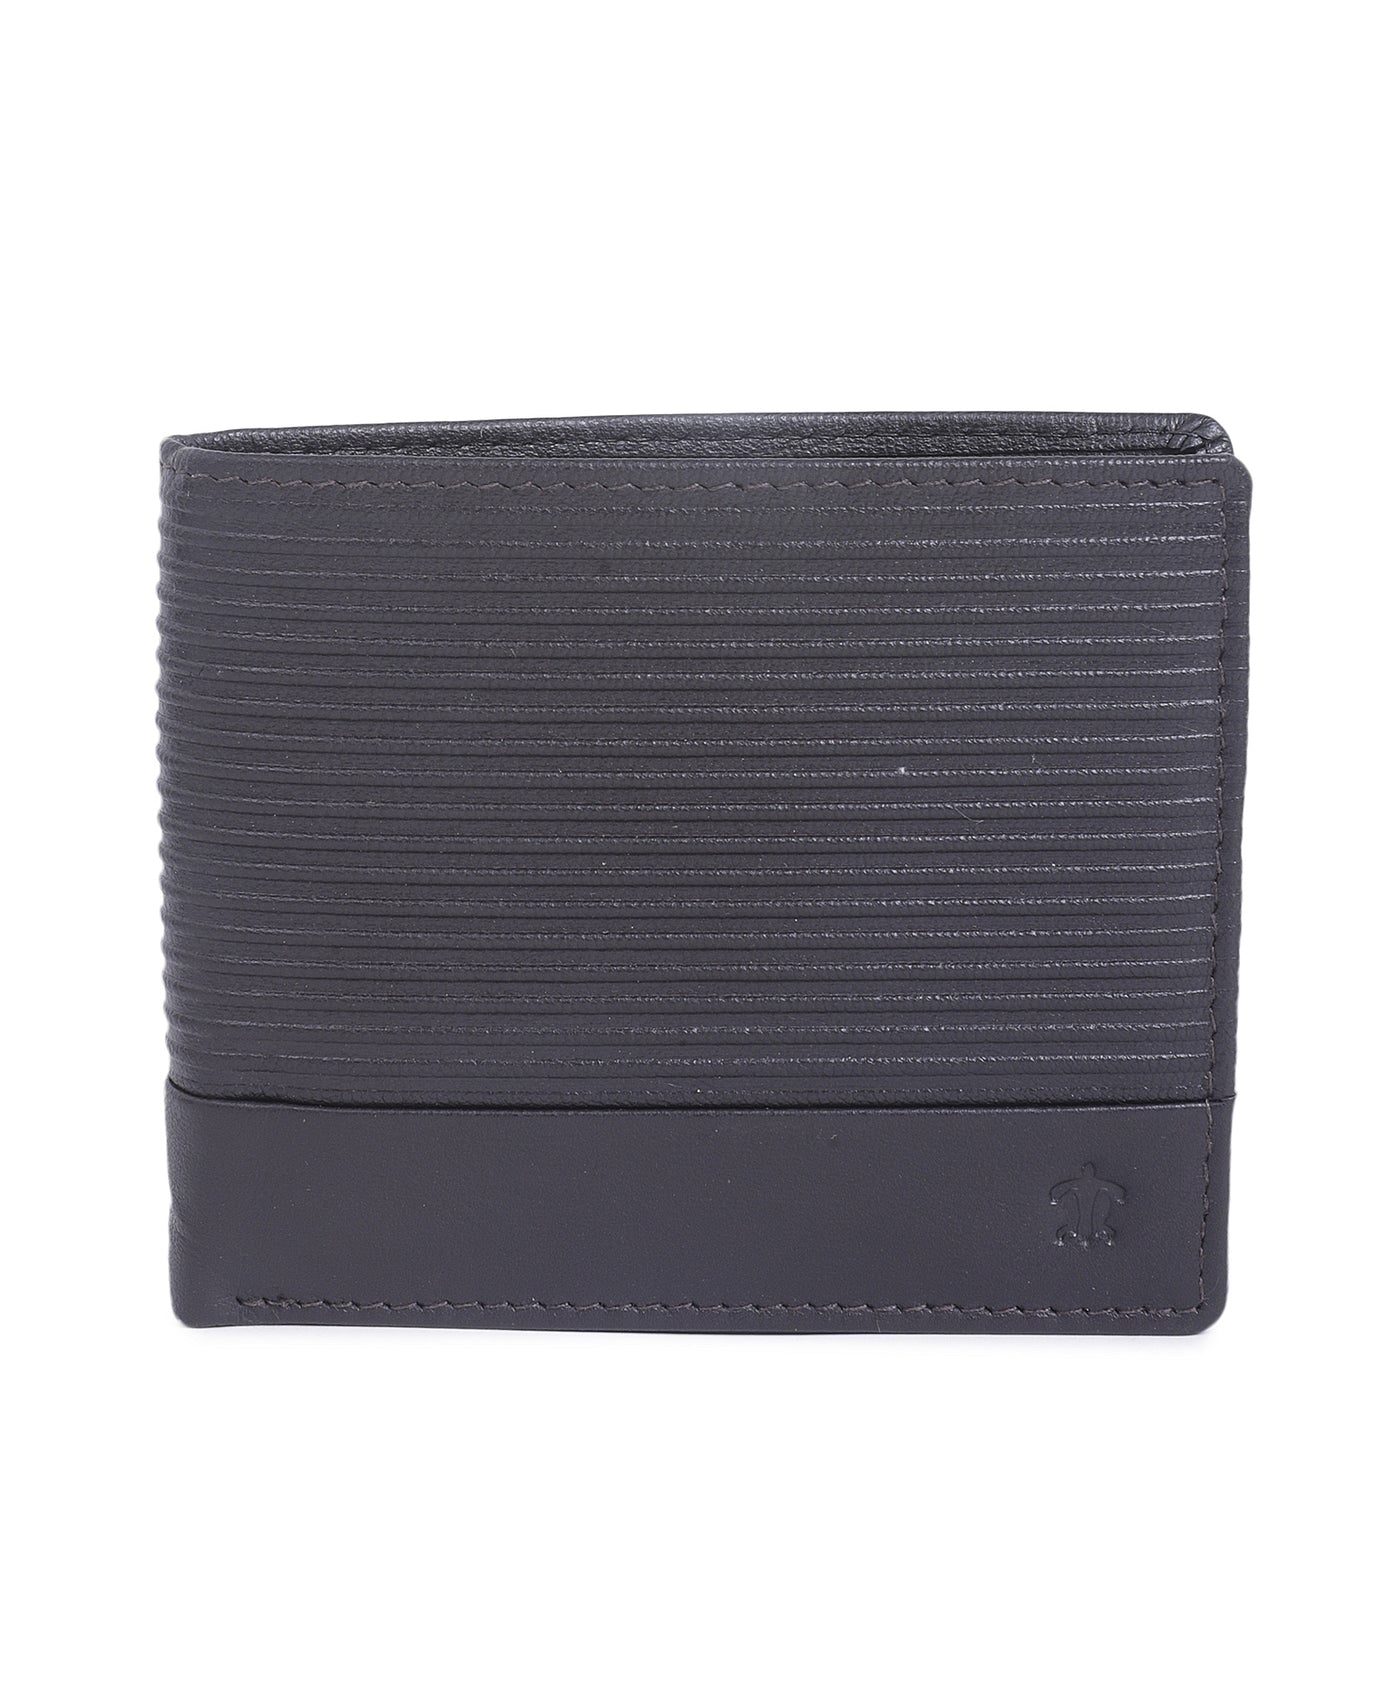 Leather Dark Brown Self Design Regular Formal Wallets